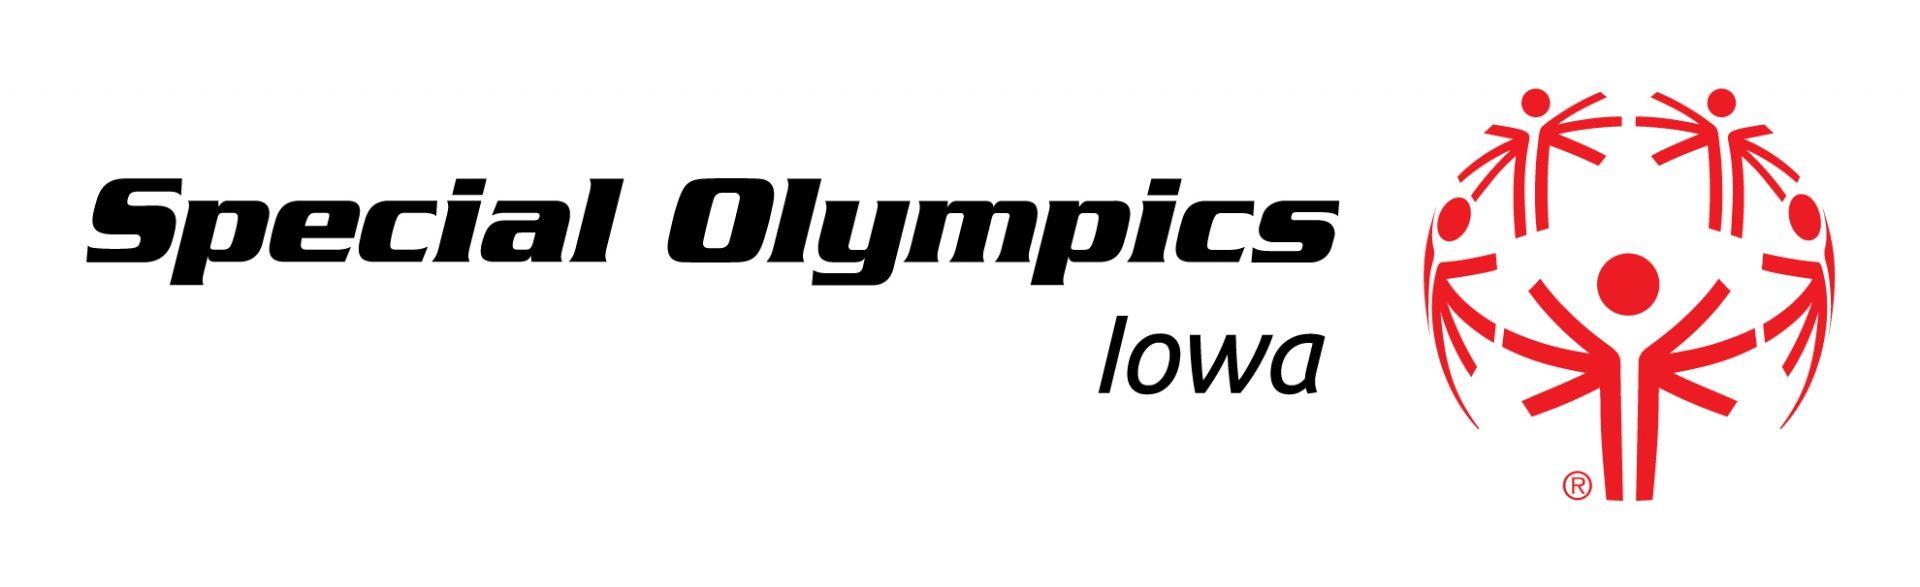 Lowa Logo - Logos - Special Olympics Iowa